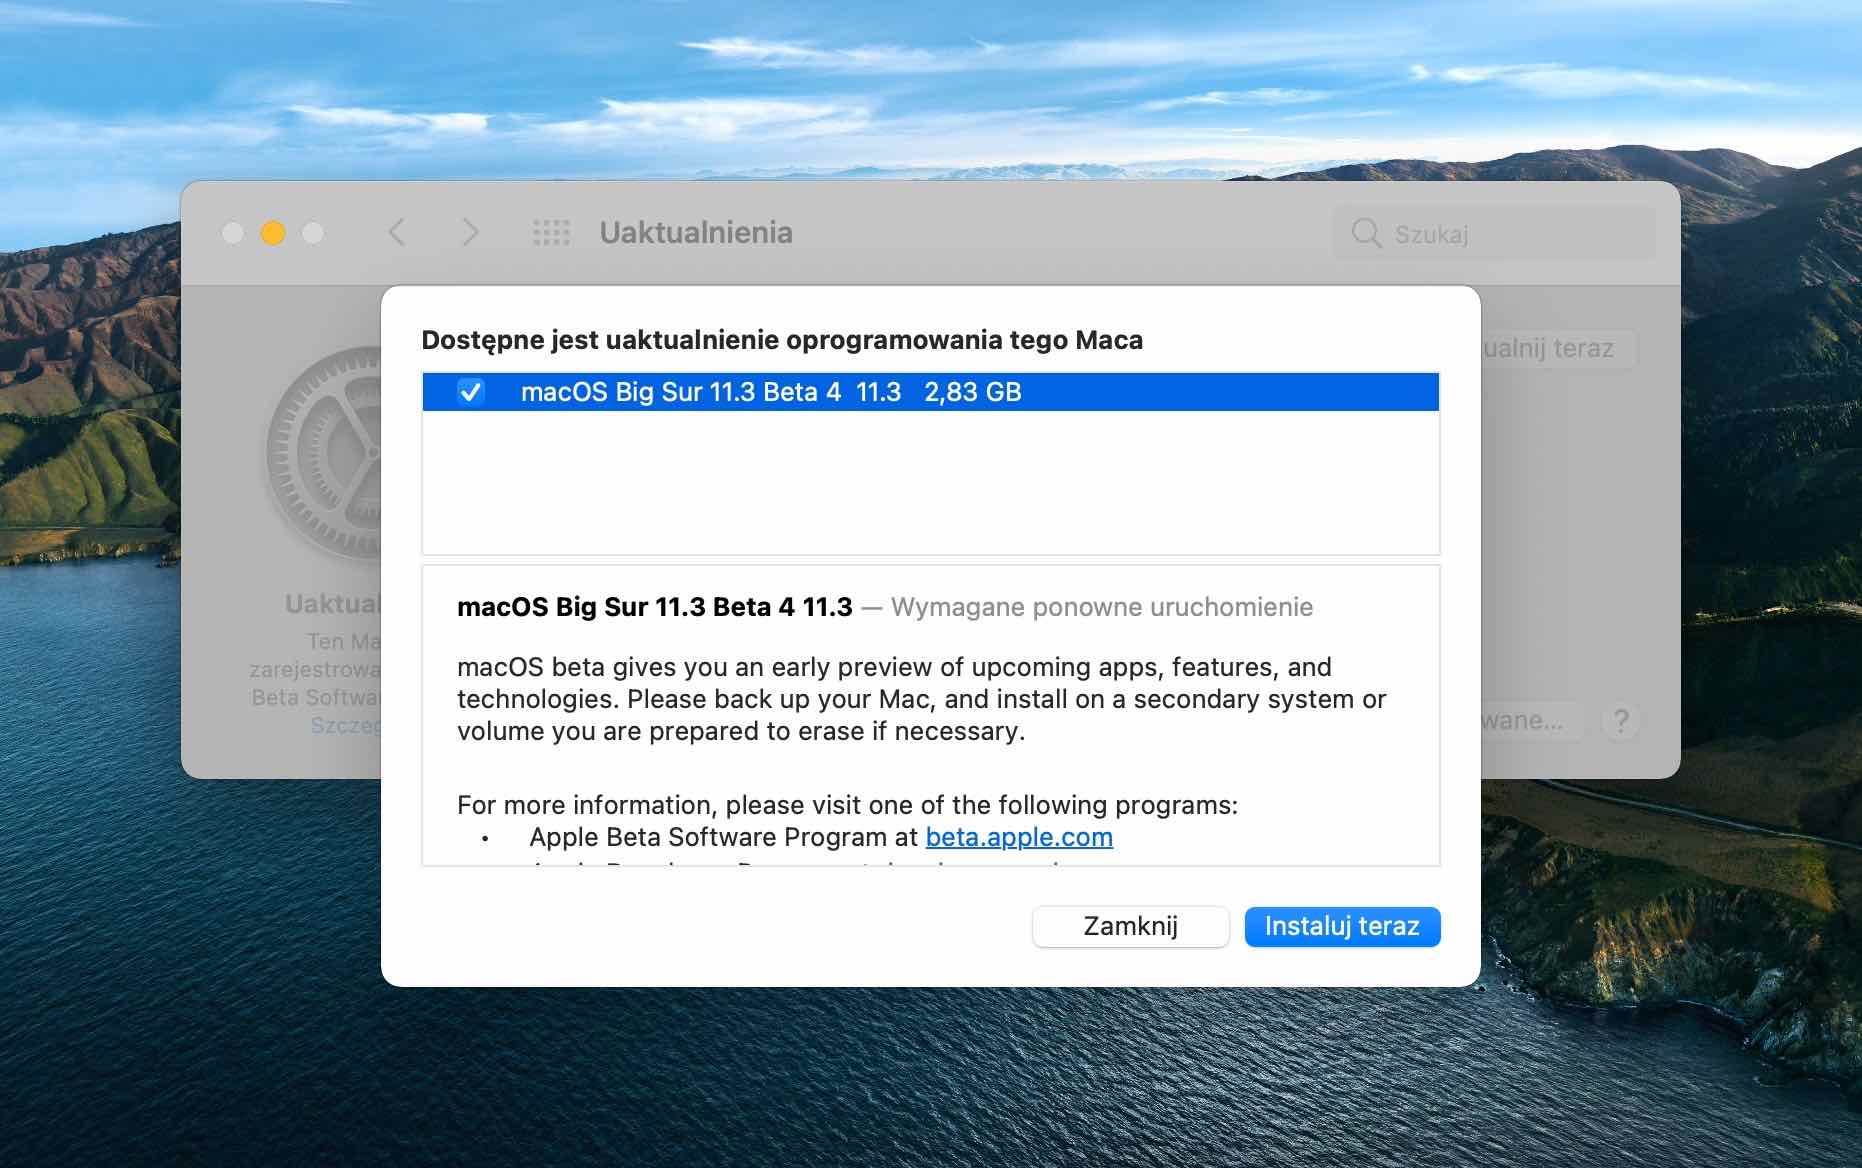 macOS Big Sur 11.3 beta 4 dostępny polecane, ciekawostki Nowości, macOS Big Sur beta, macOS Big Sur 11.3 beta 4 dostępny, lista nowości, co nowego  Dziś oprócz iOS 14.5 beta 4 i iPadOS 14.5 beta 4, firma Apple udostępniła deweloperom także macOS Big Sur 11.3 beta 4. macos11.3 4